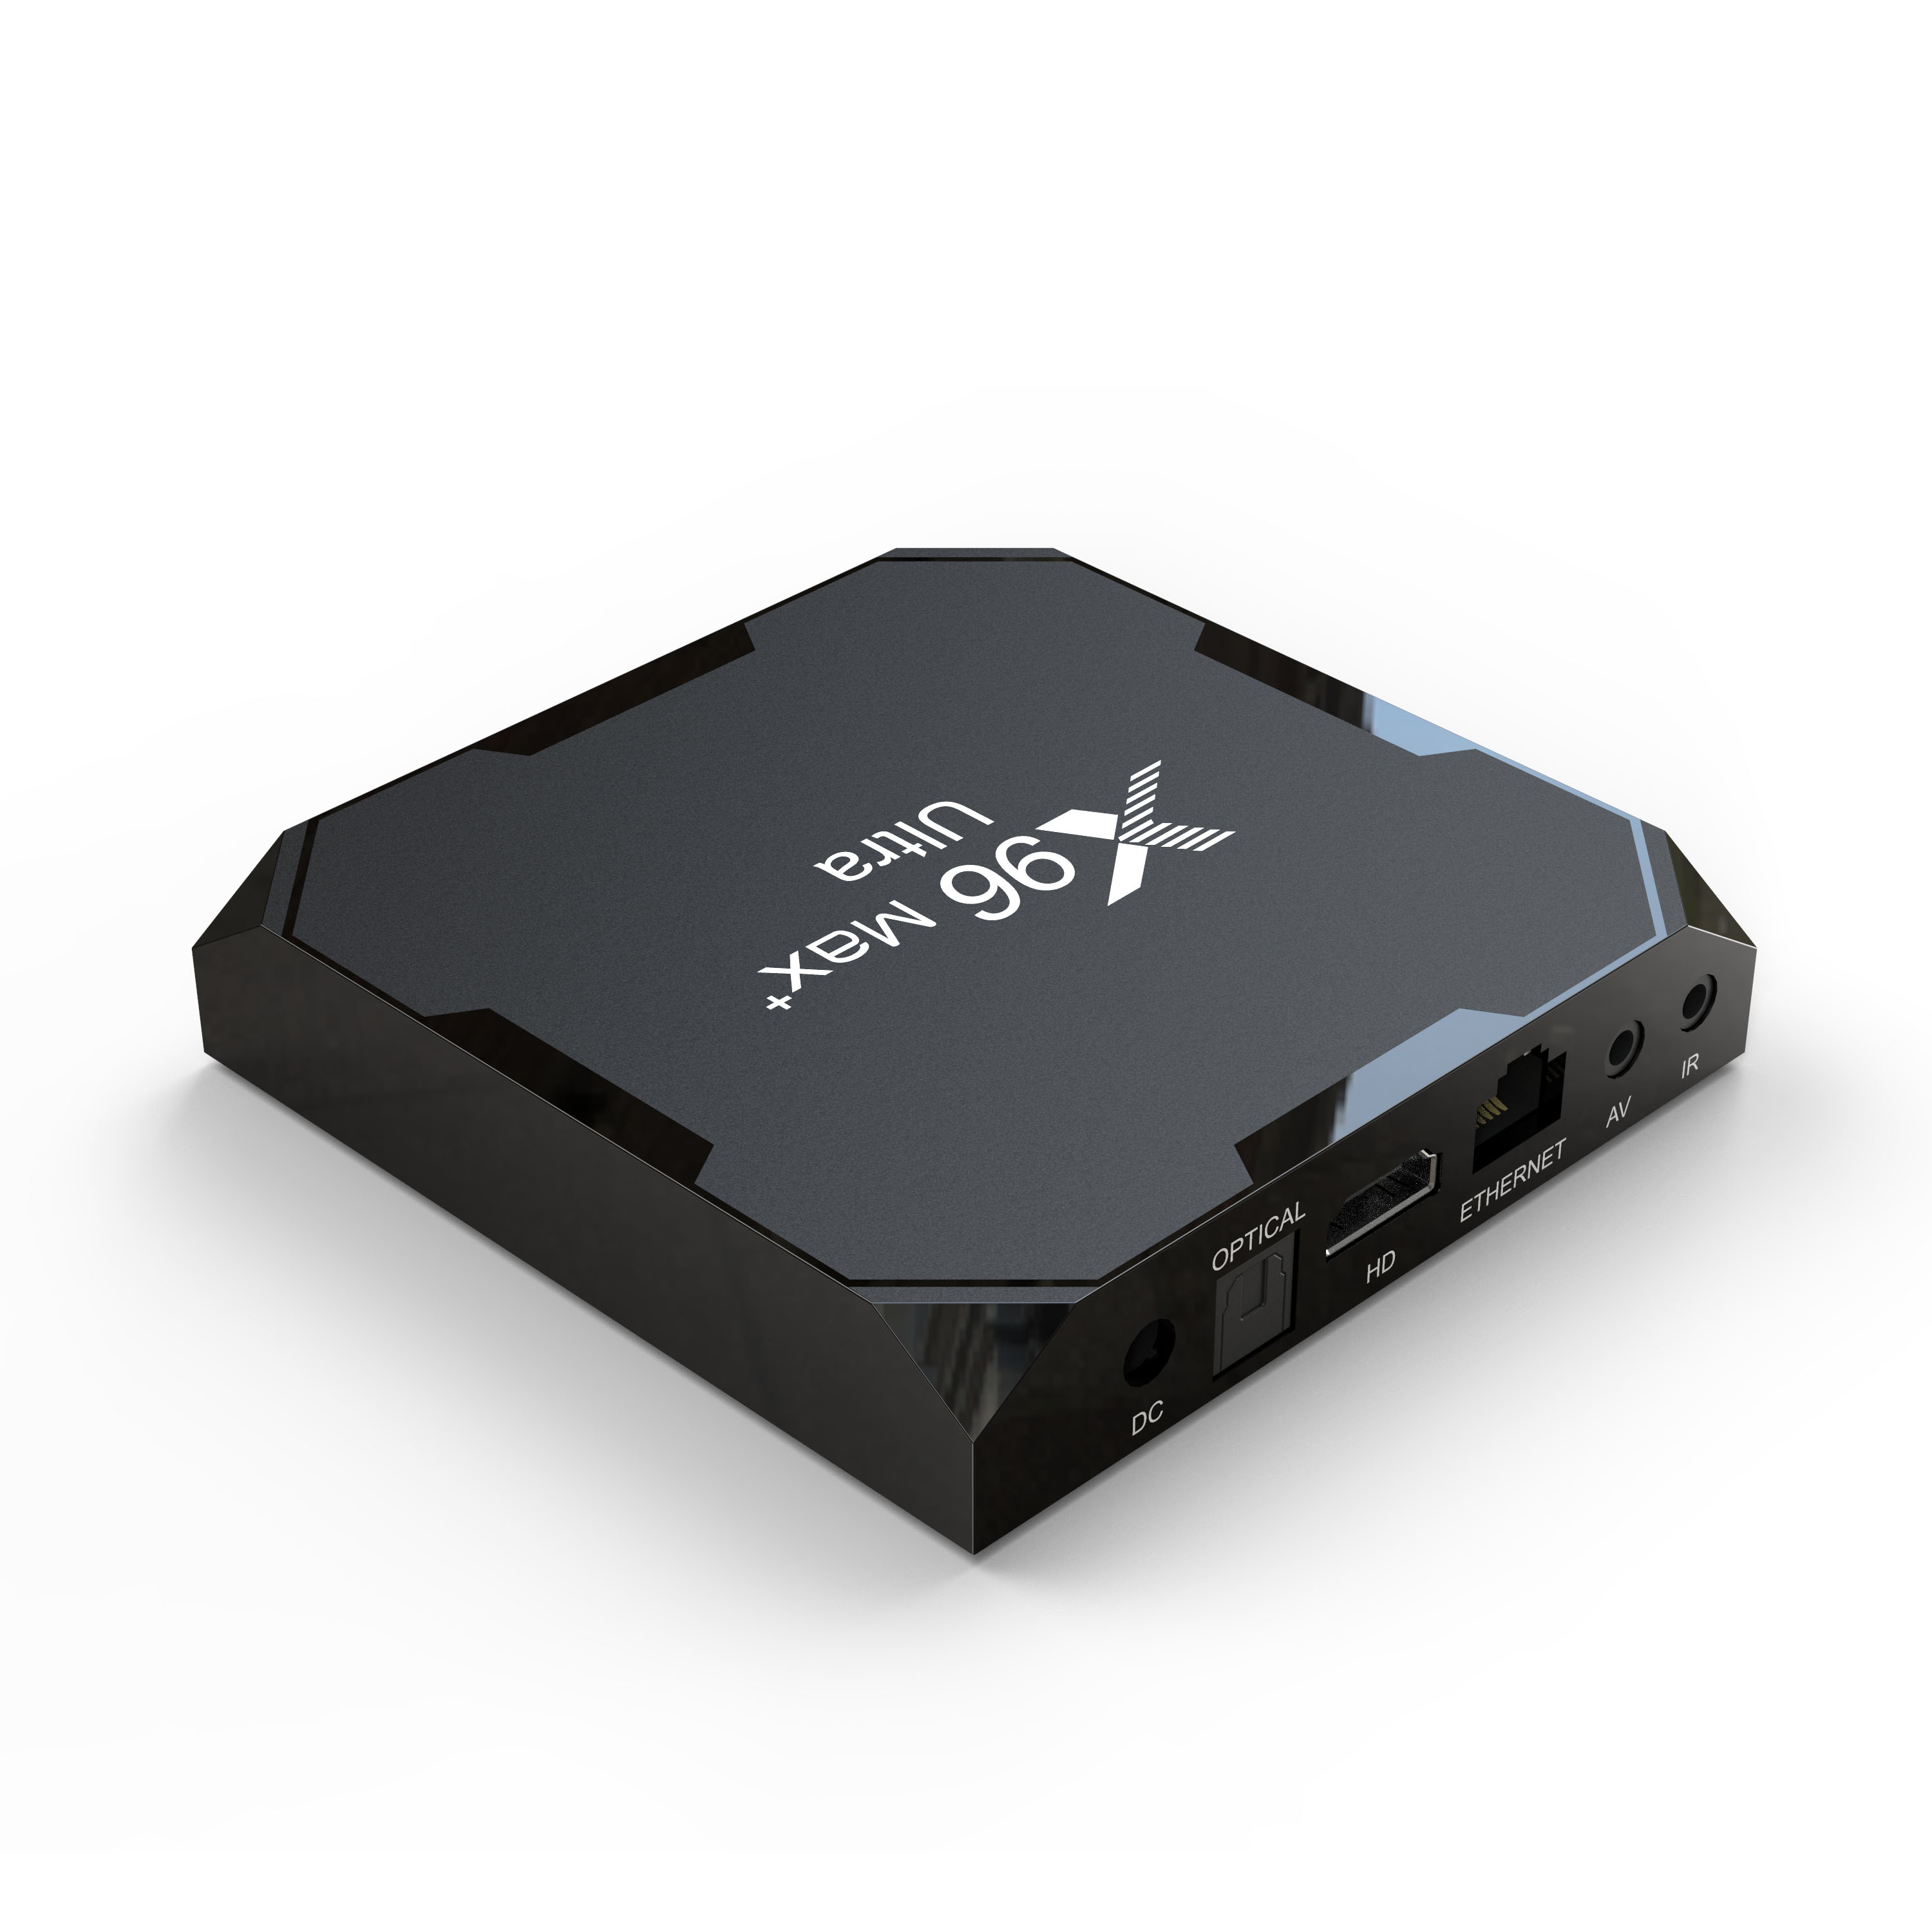 X96Max+ Ultra 机顶盒